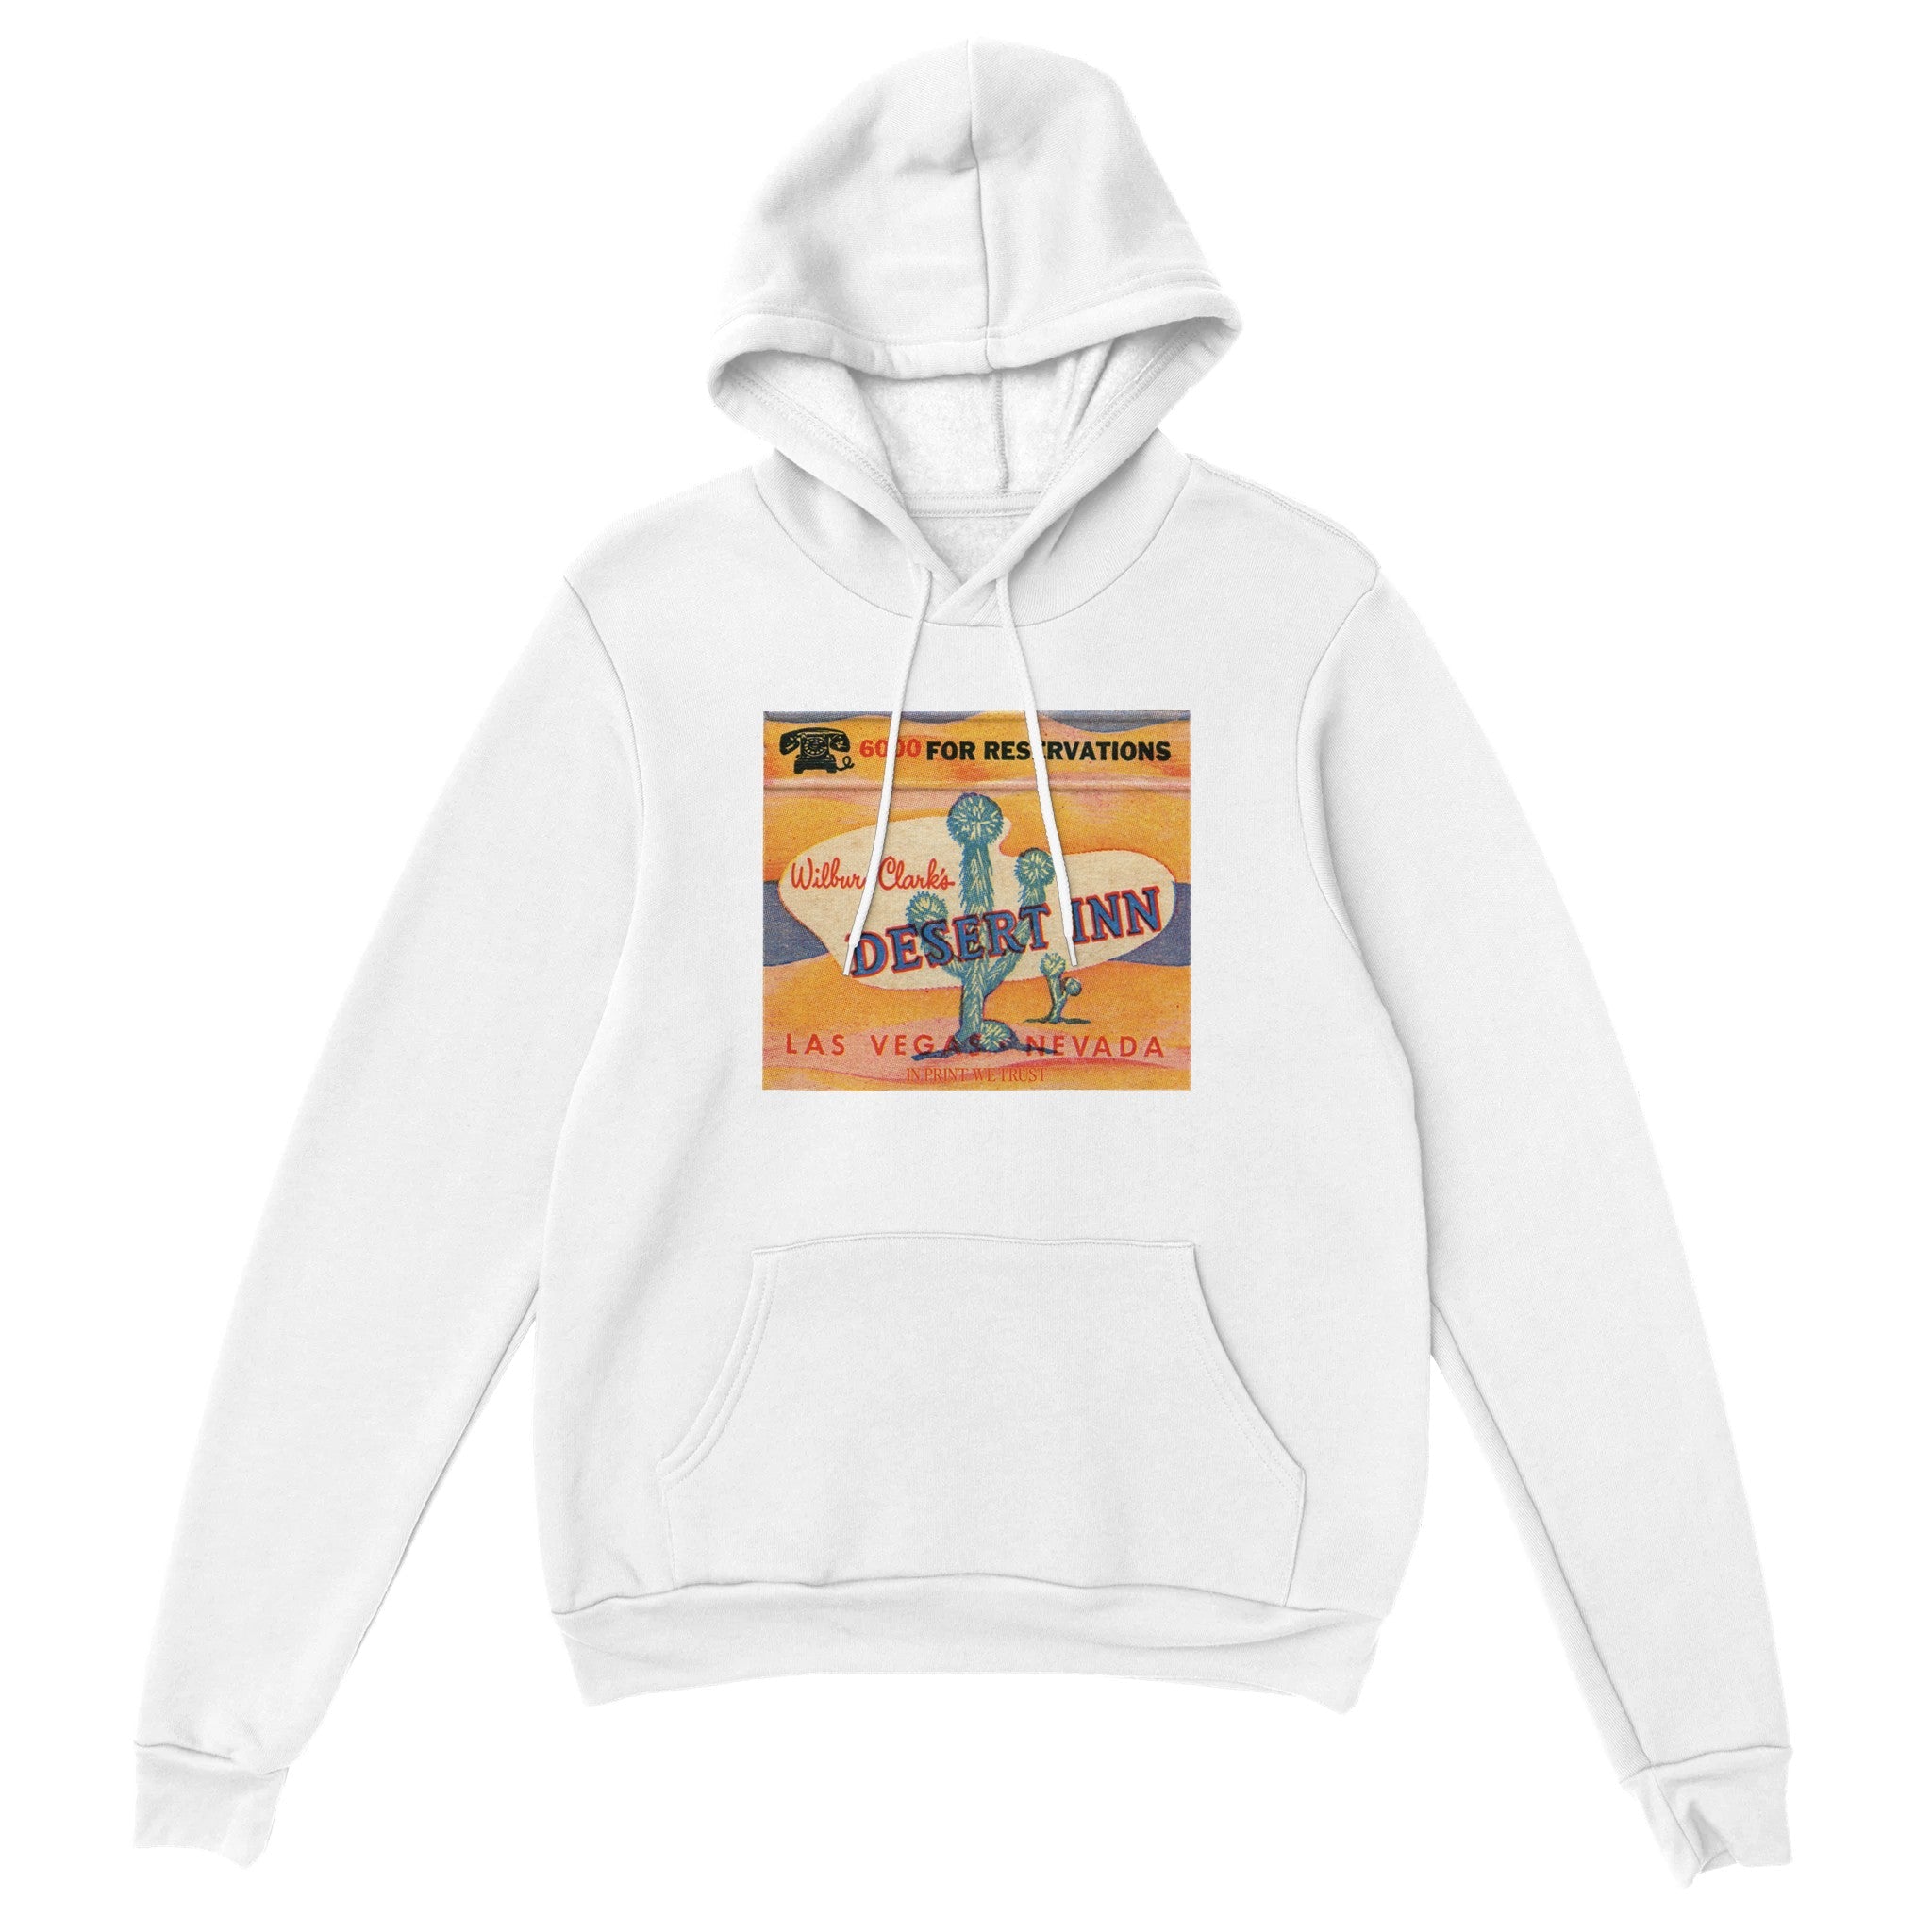 'Desert Inn' hoodie - In Print We Trust